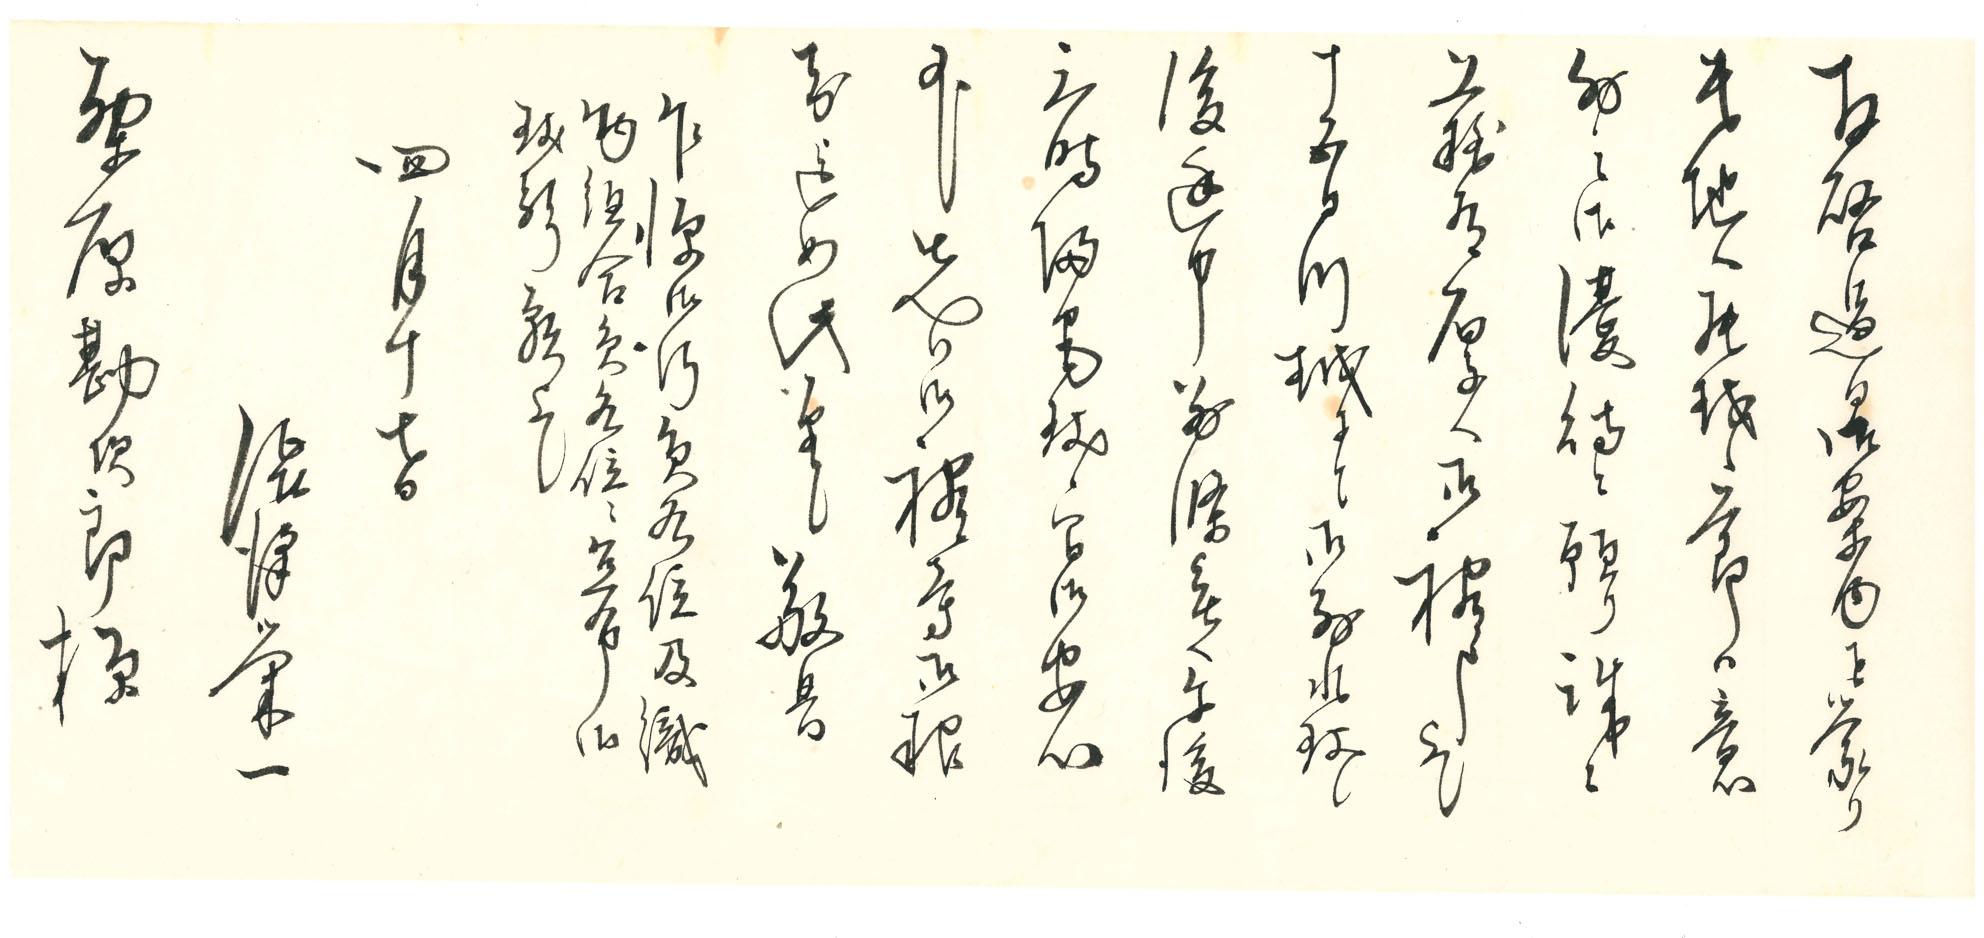 白い紙に流れるような文字で書かれている渋沢栄一からの手紙の写真